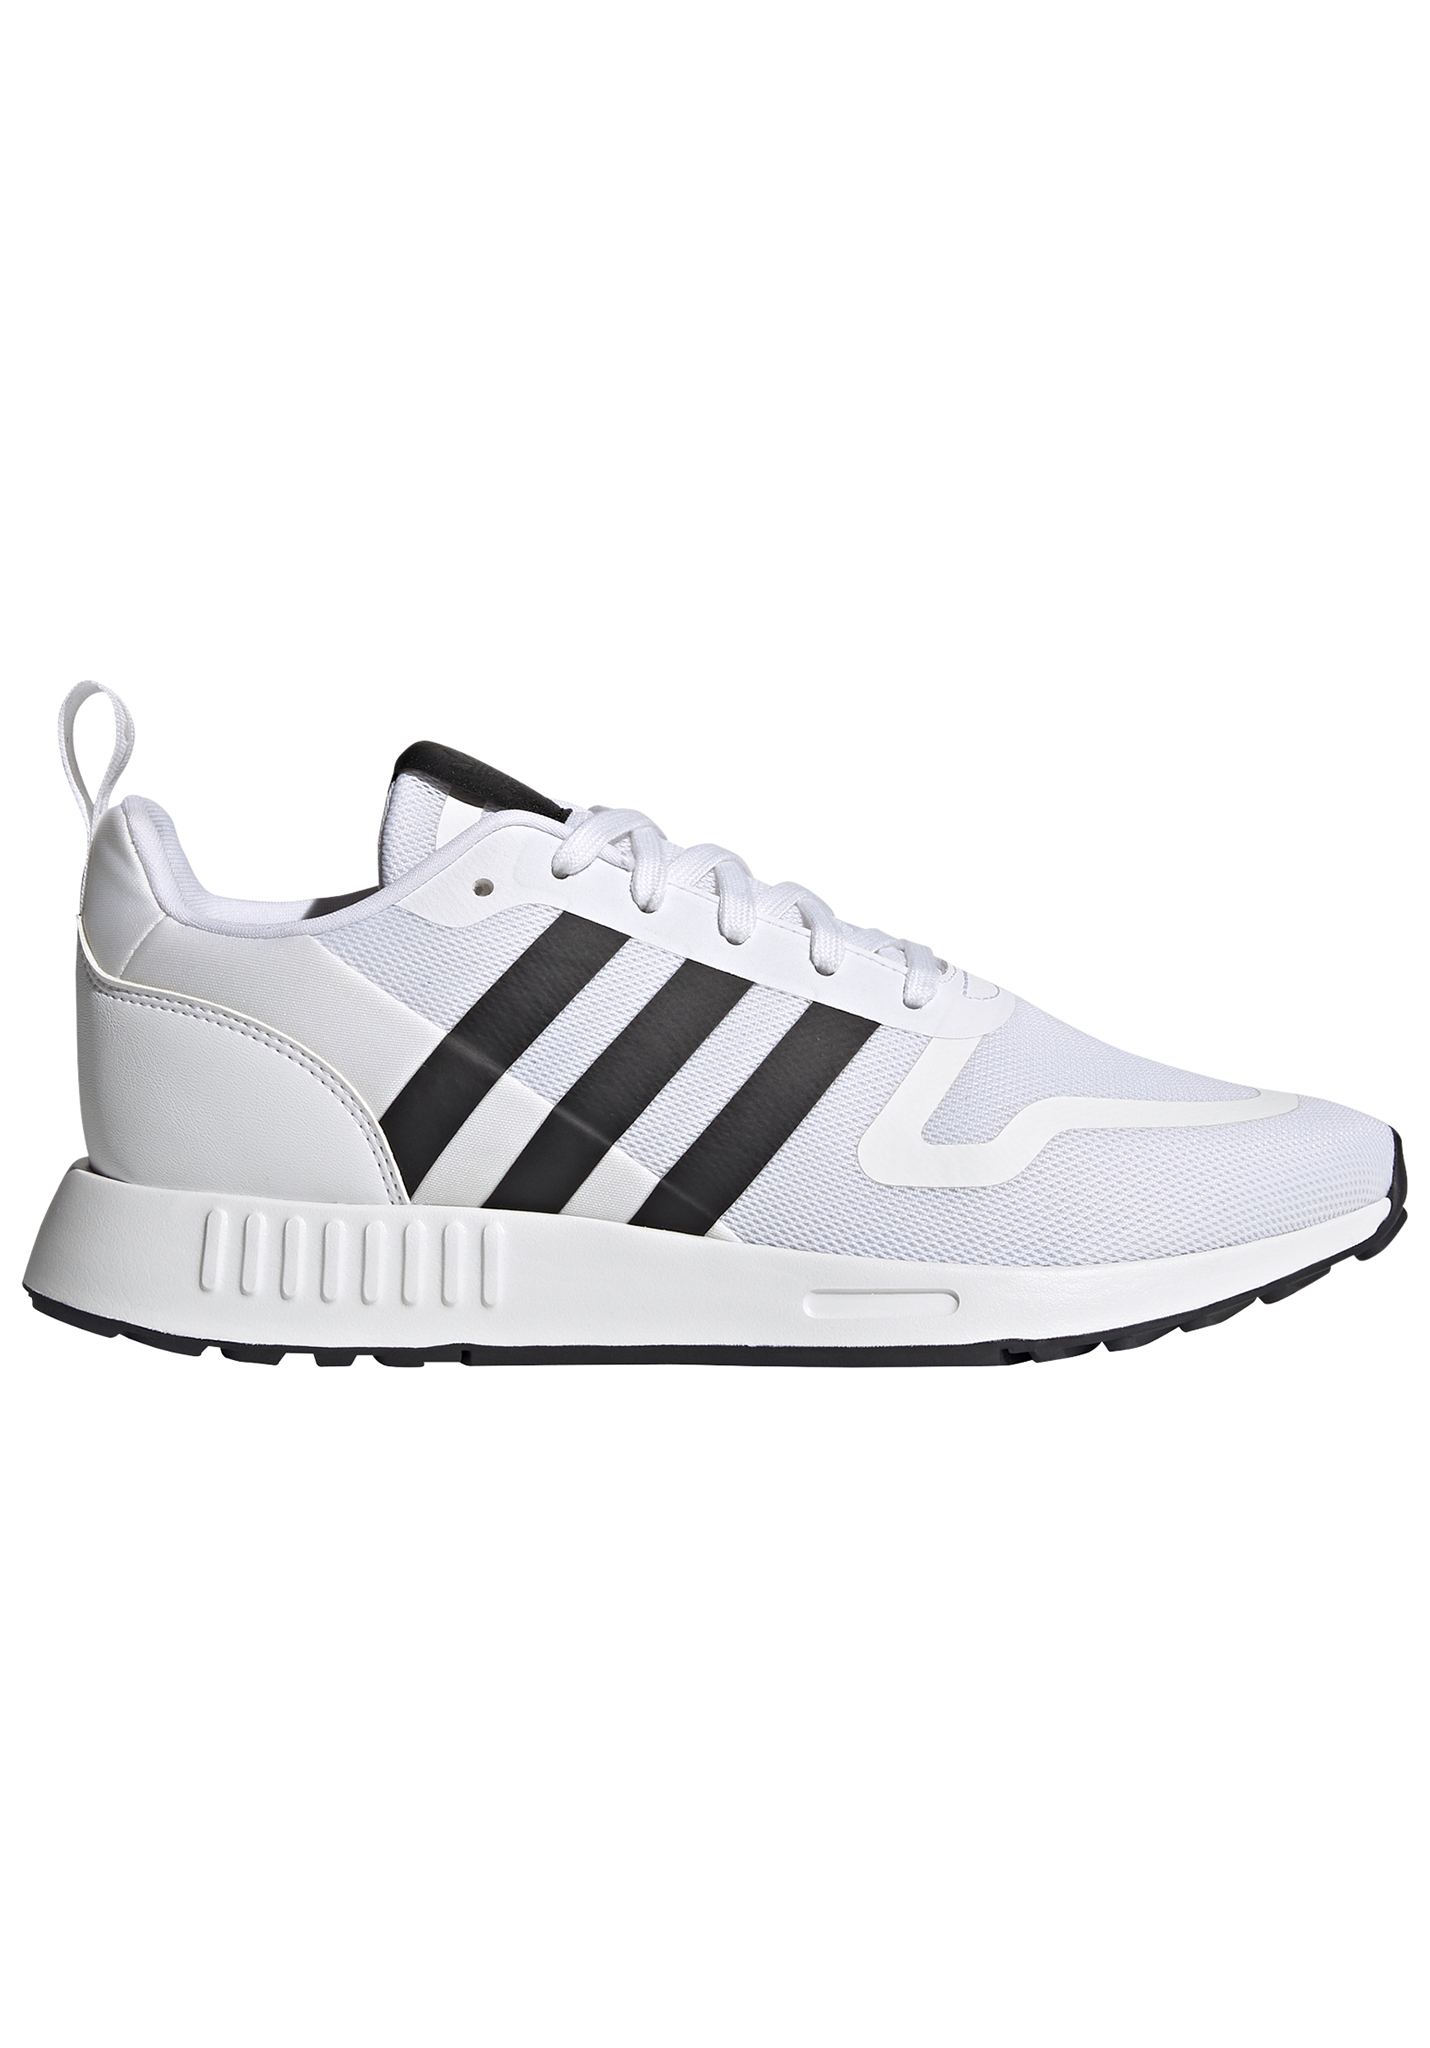 Adidas Originals Multix Sneaker weiß/schwarz 44 2/3